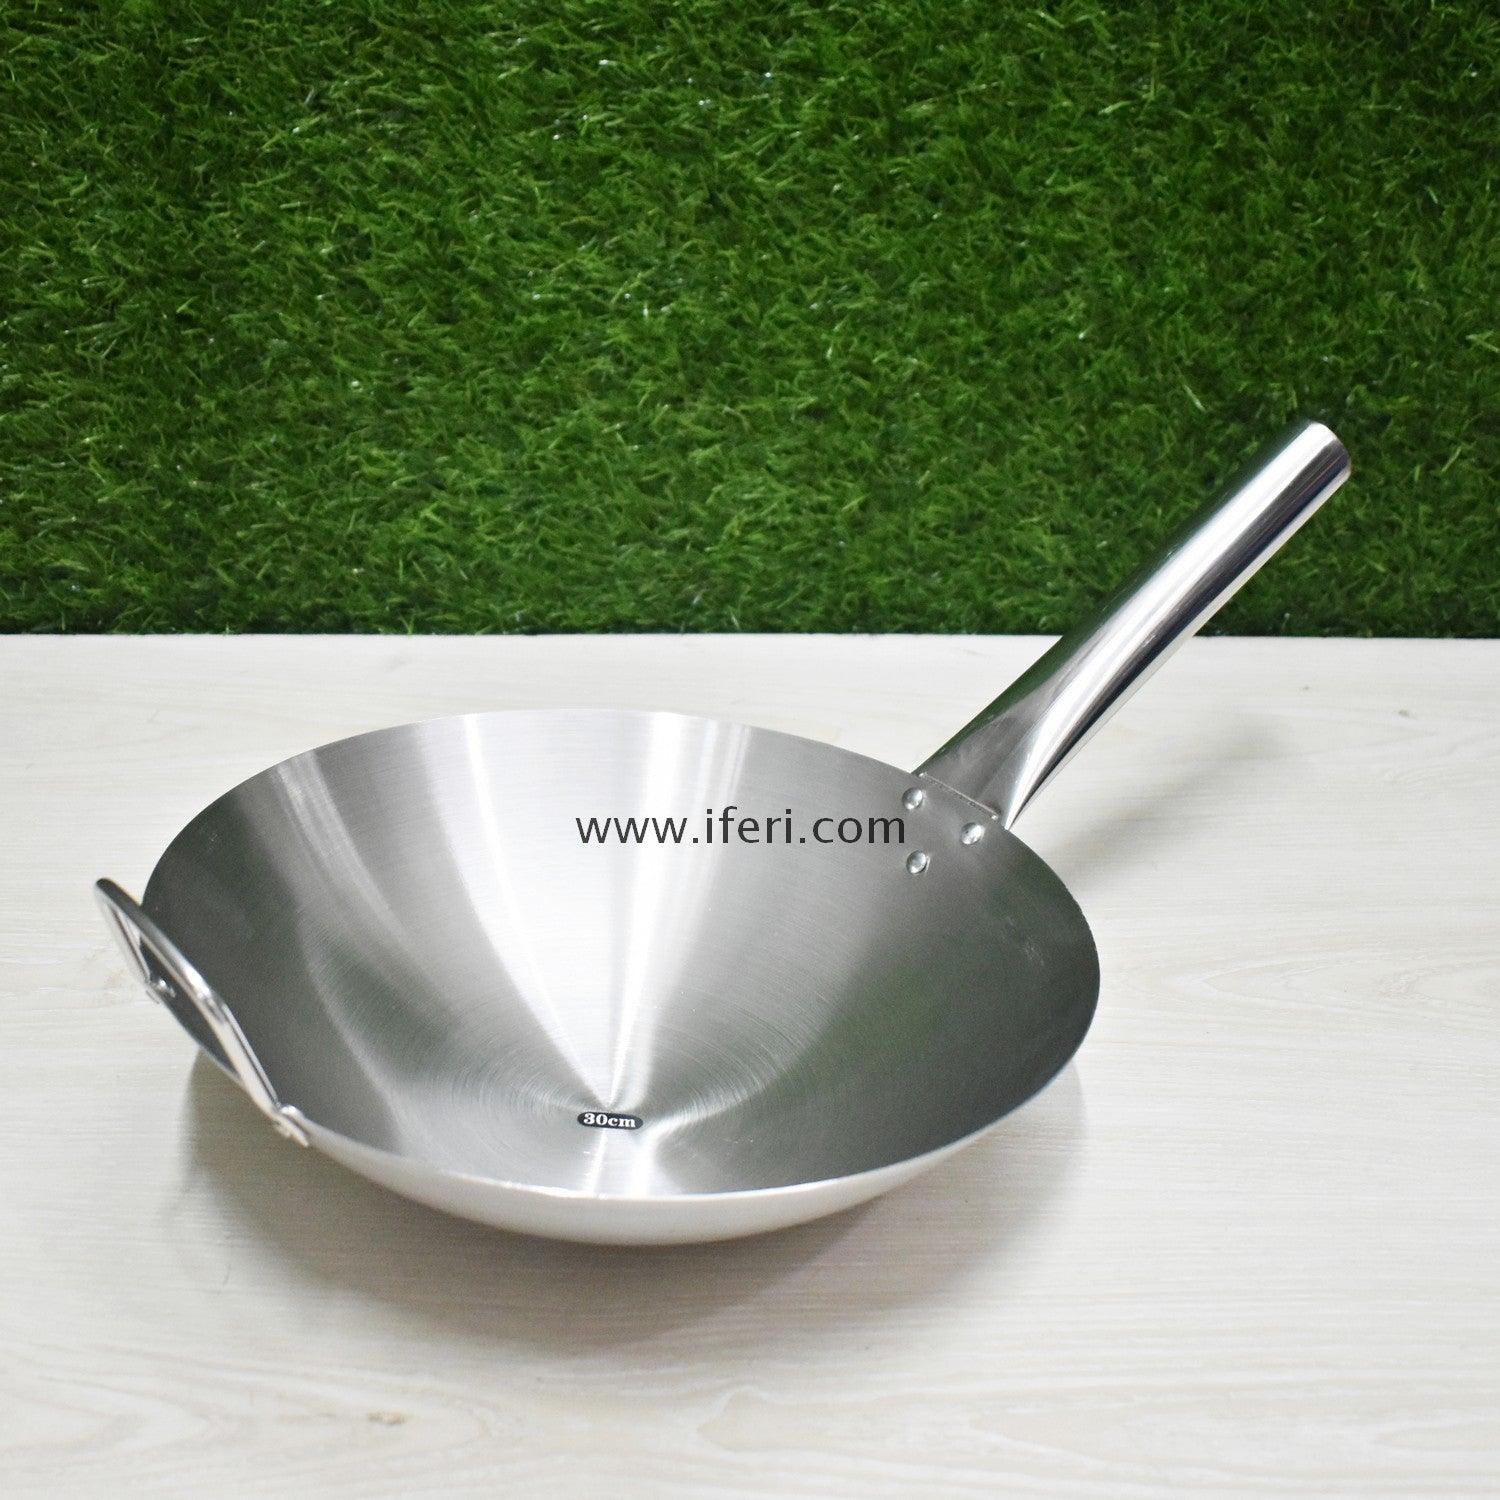 36cm Stainless Steel Cooking Karai TB8465 Price in Bangladesh - iferi.com